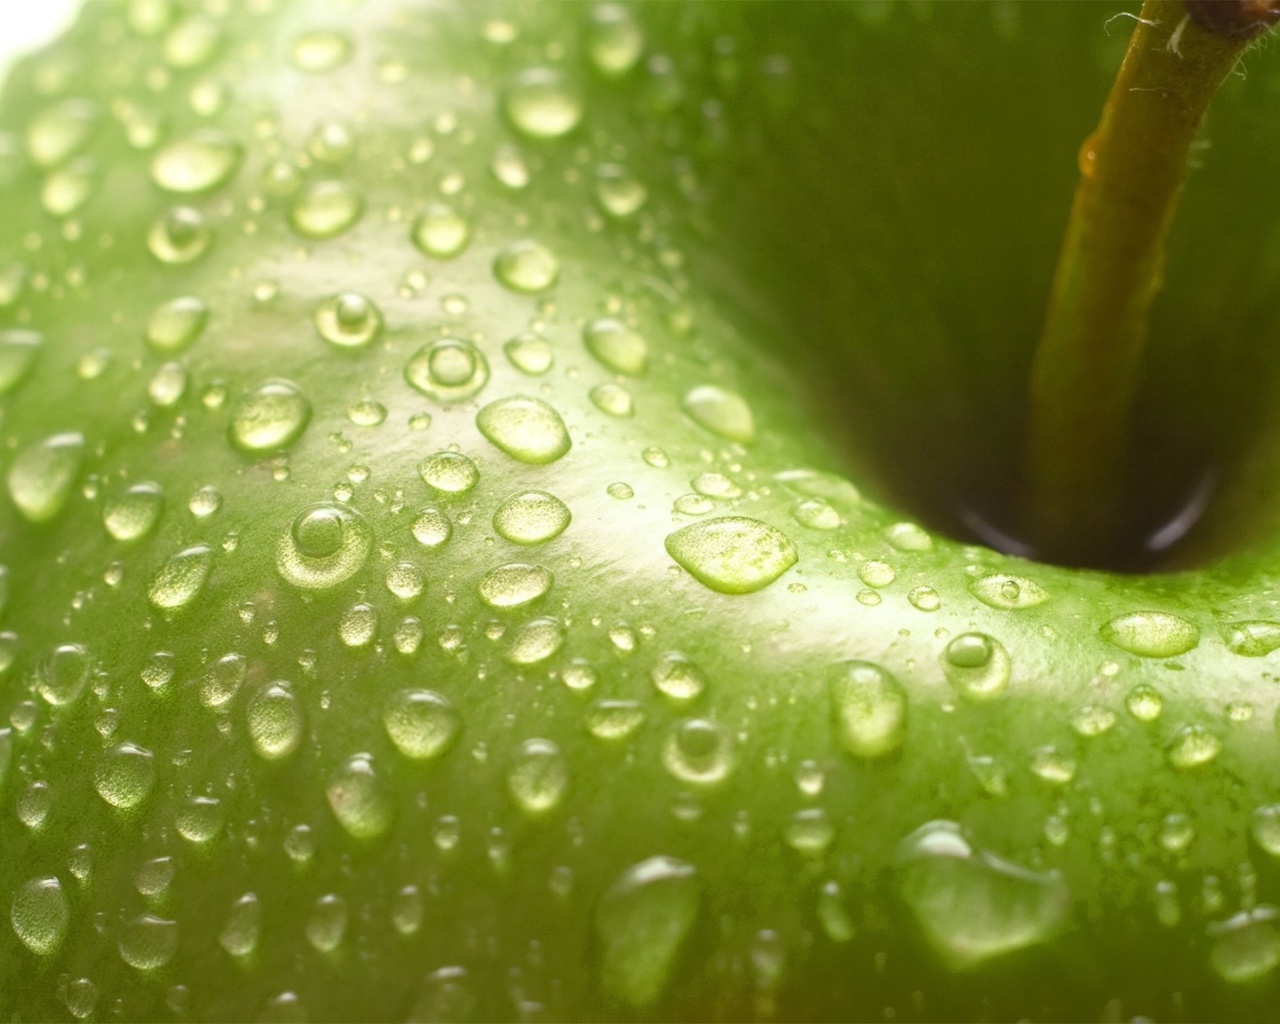 Water Drops On Green Apple wallpaper 1280x1024